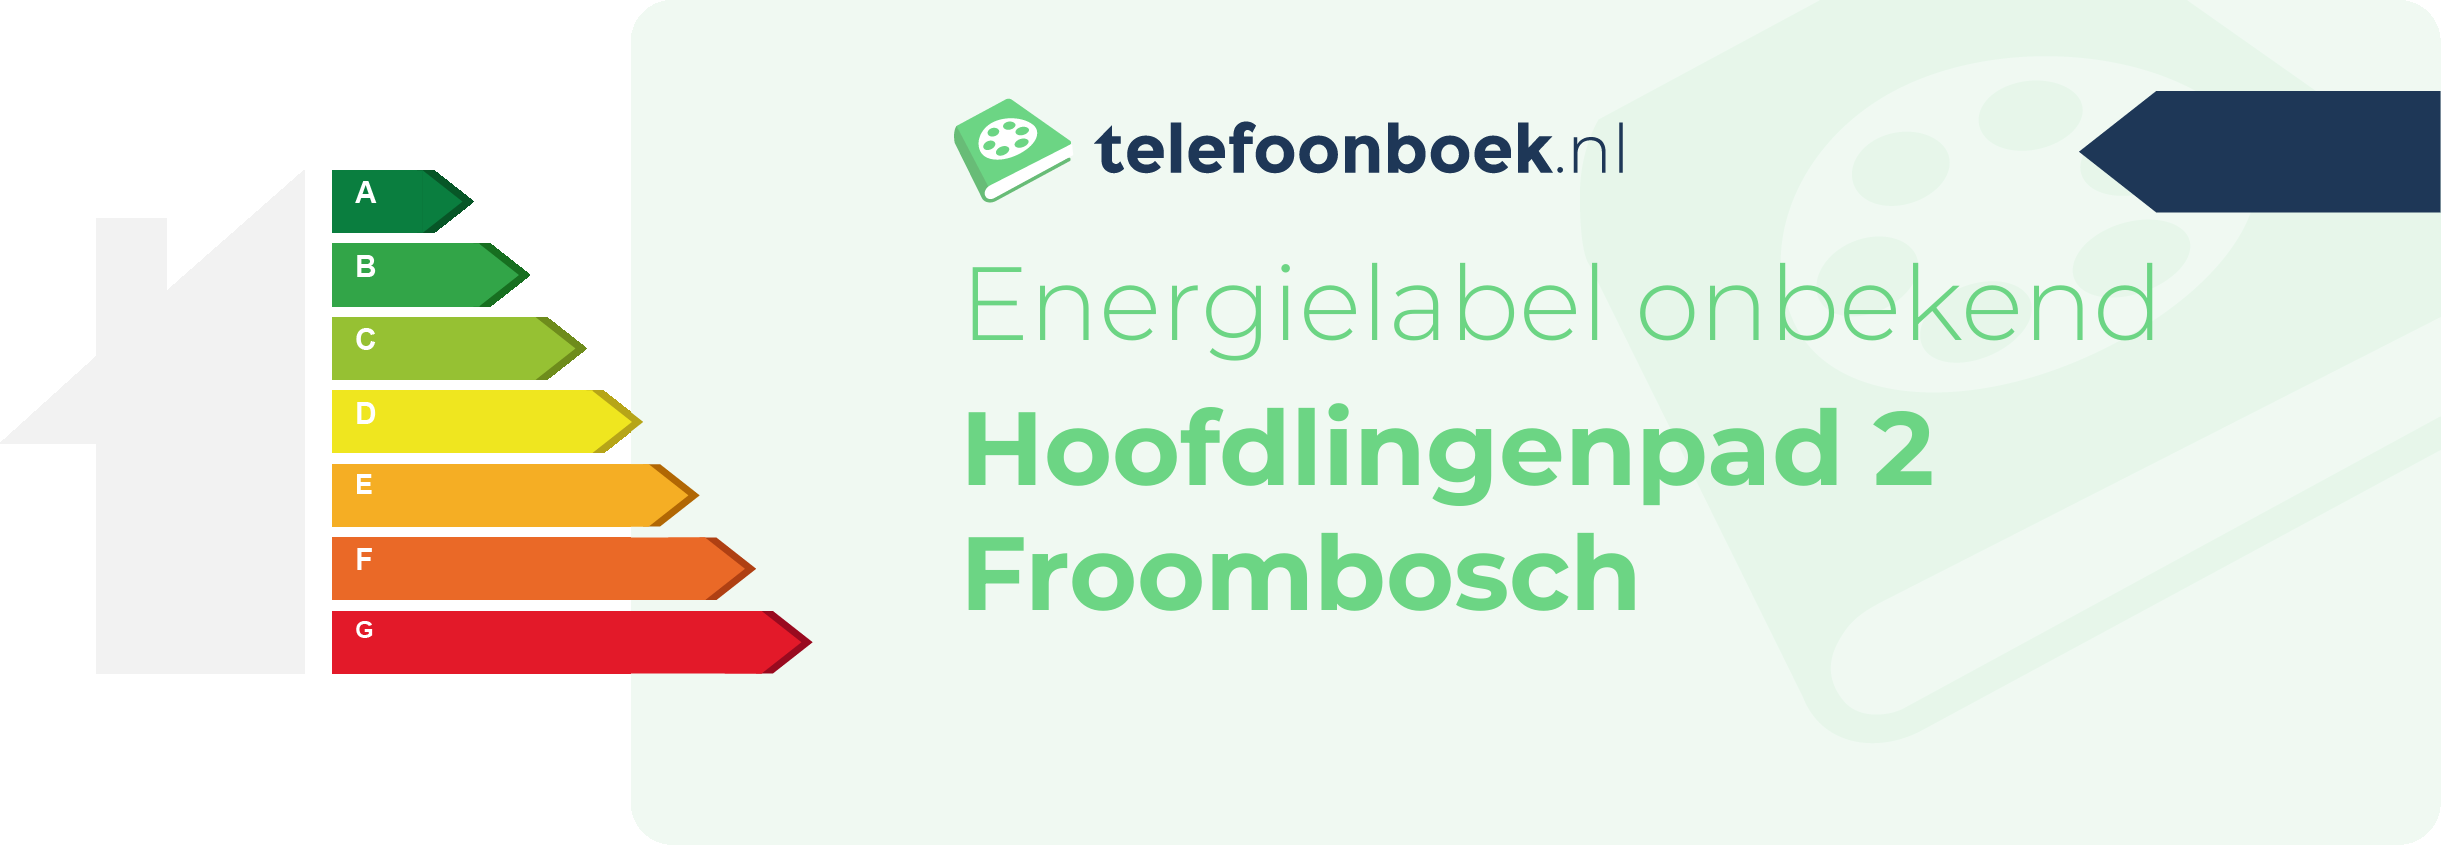 Energielabel Hoofdlingenpad 2 Froombosch